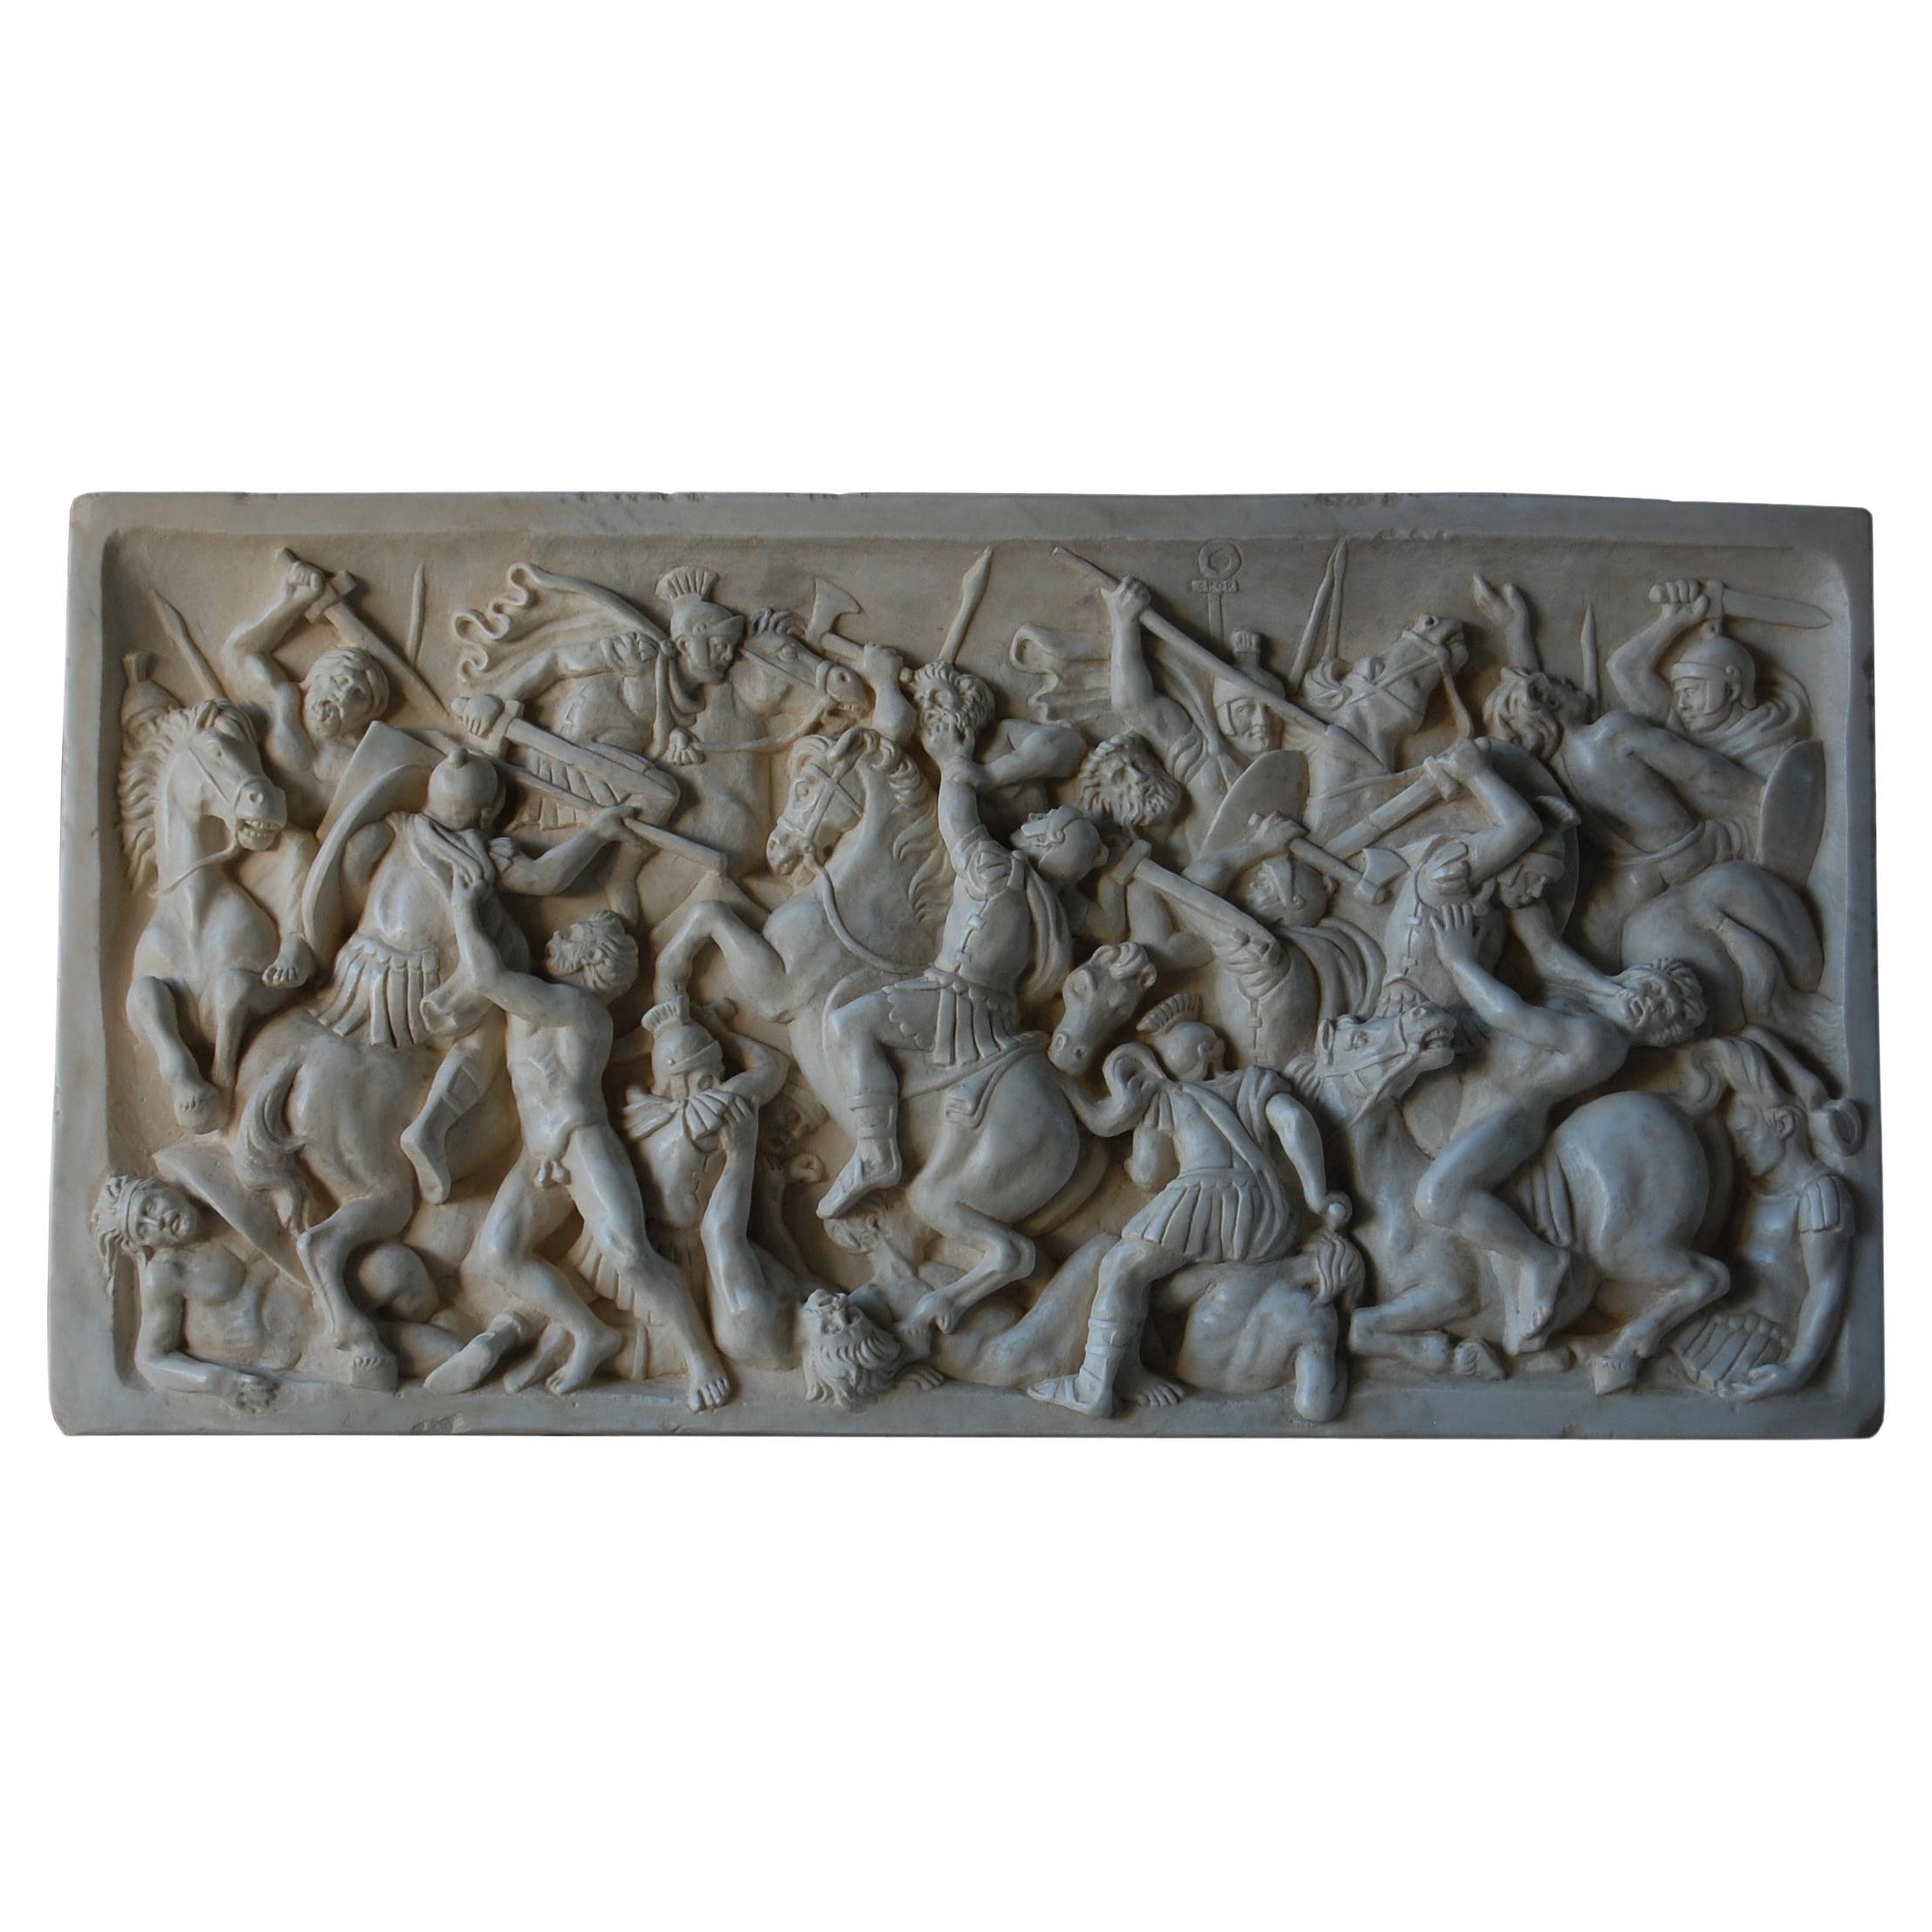 Altorilievo battaglia romana in marmo bianco di Carrara For Sale